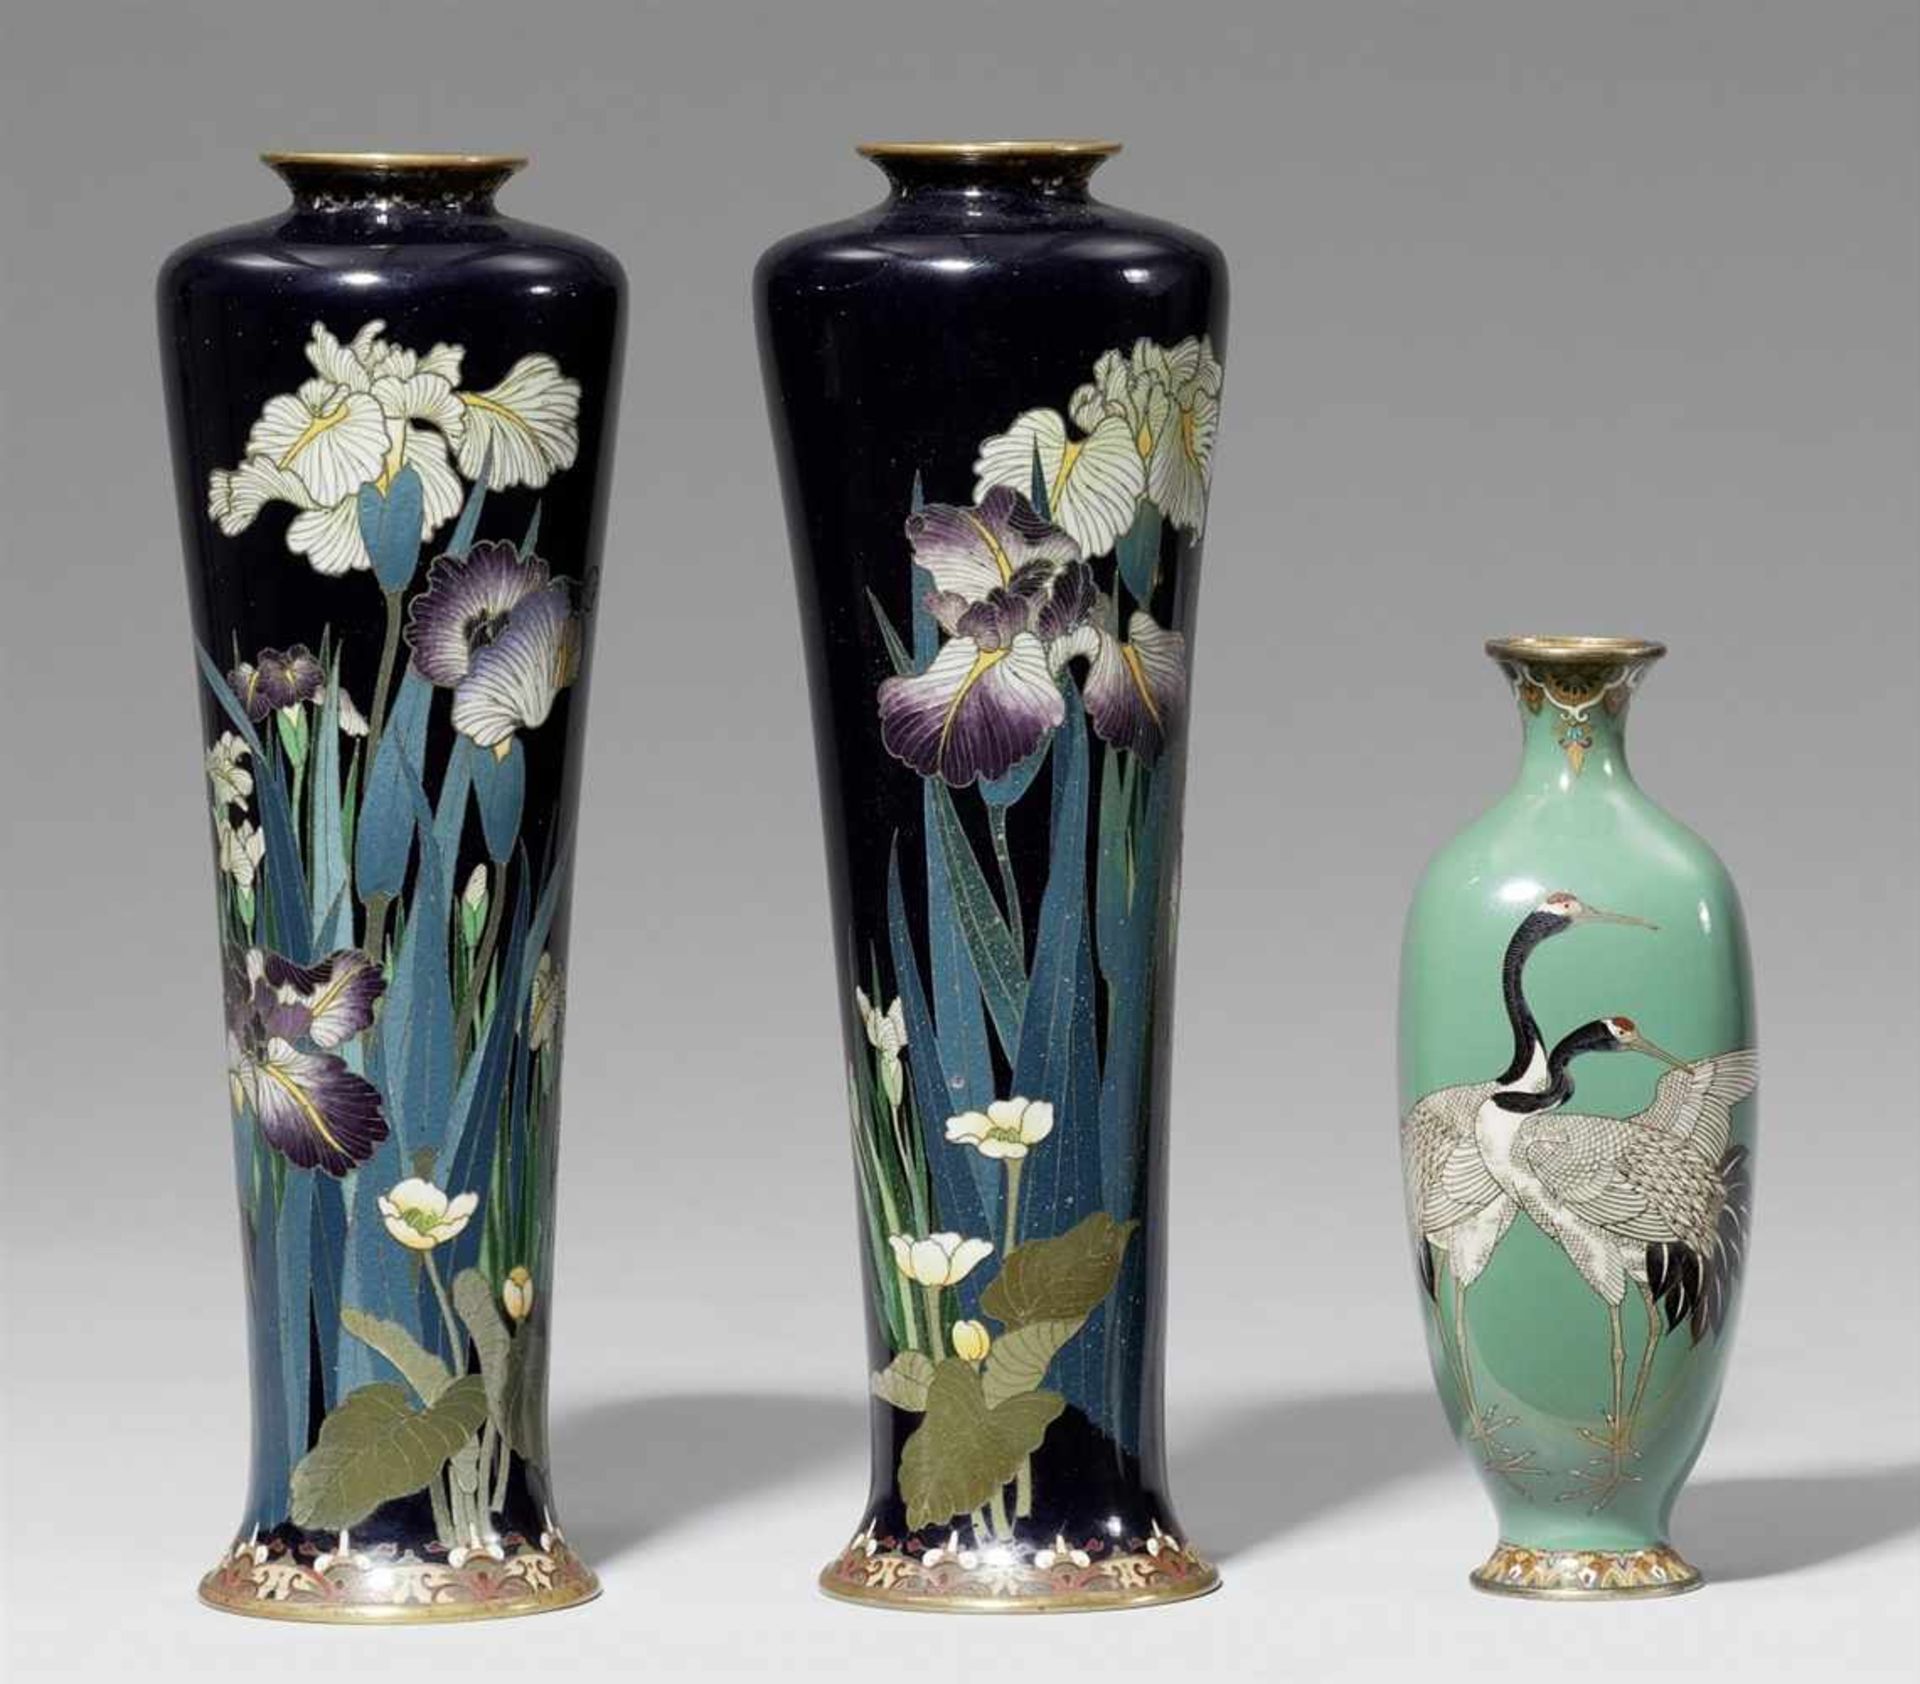 Paar Vasen und eine kleinere Vase. Email cloisonné. Spätes 19. Jha) Schlanke Form, dekoriert mit